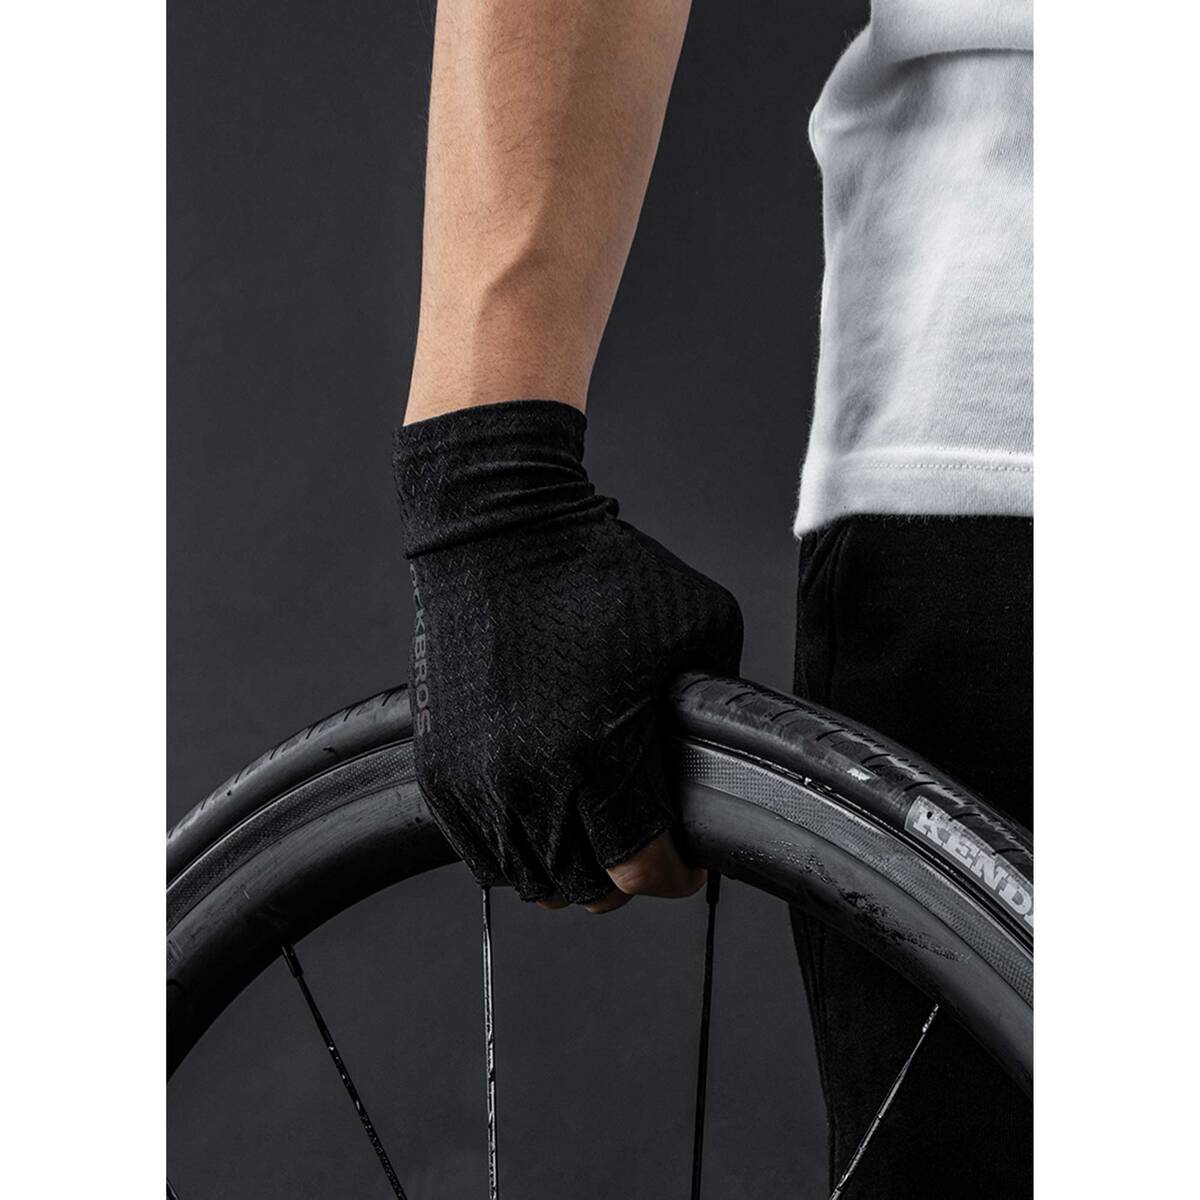 ROCKBROS Half Finger Cycling Gloves S221BK Medium